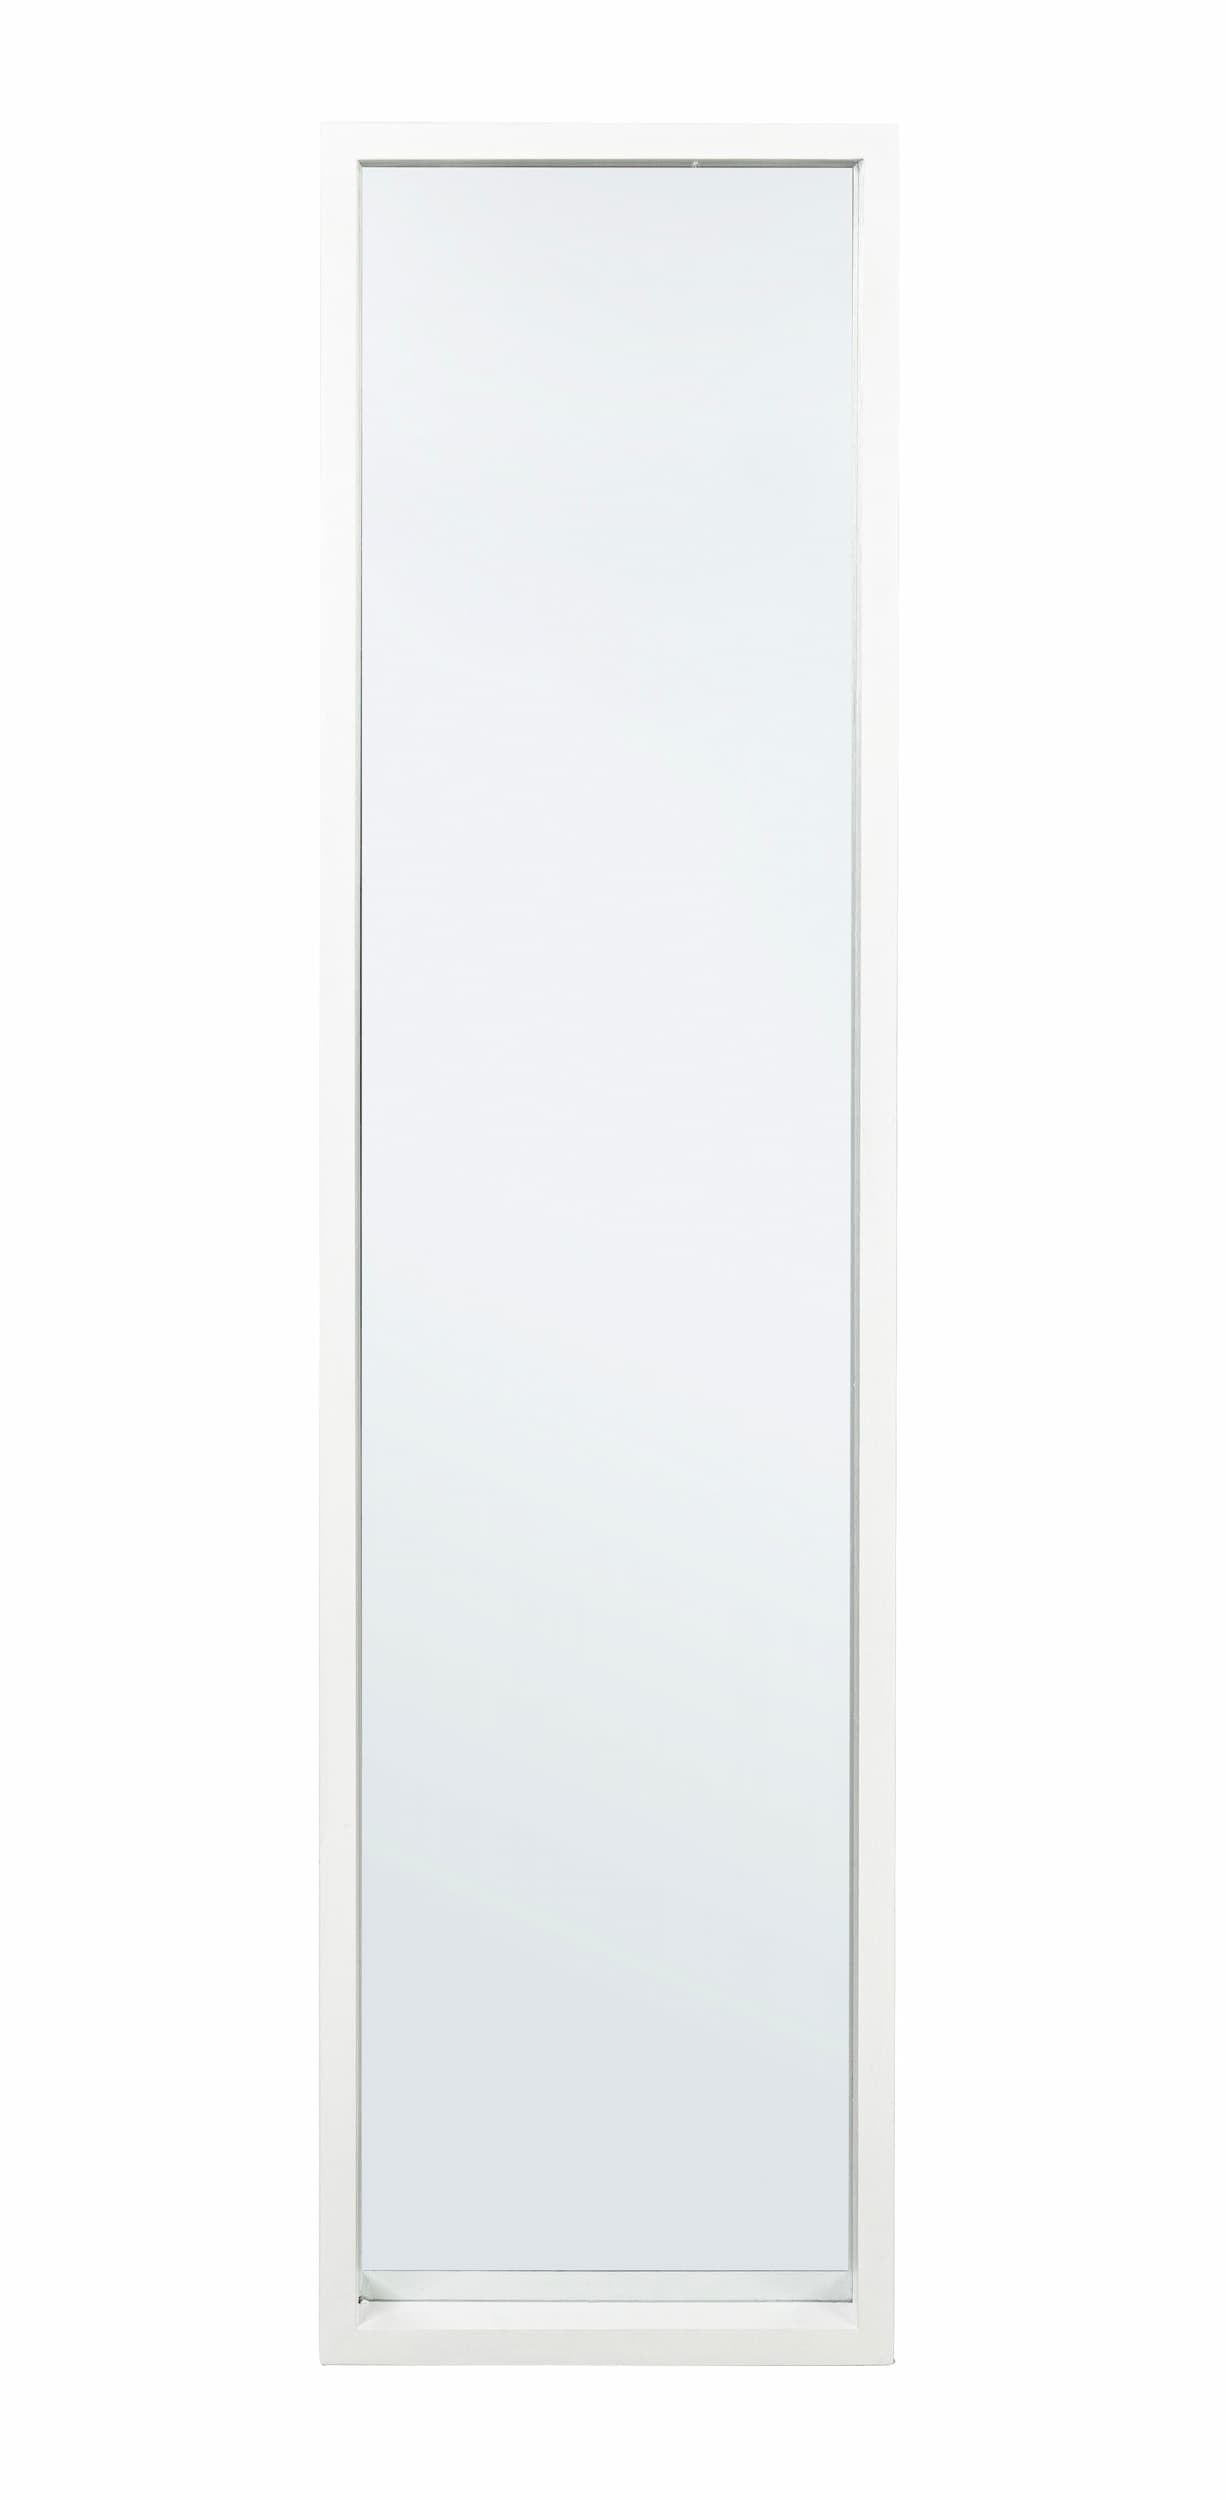 Oglinda decorativa cu rama din lemn de Paulownia, Tiziano Rectangle A, l32xH122 cm